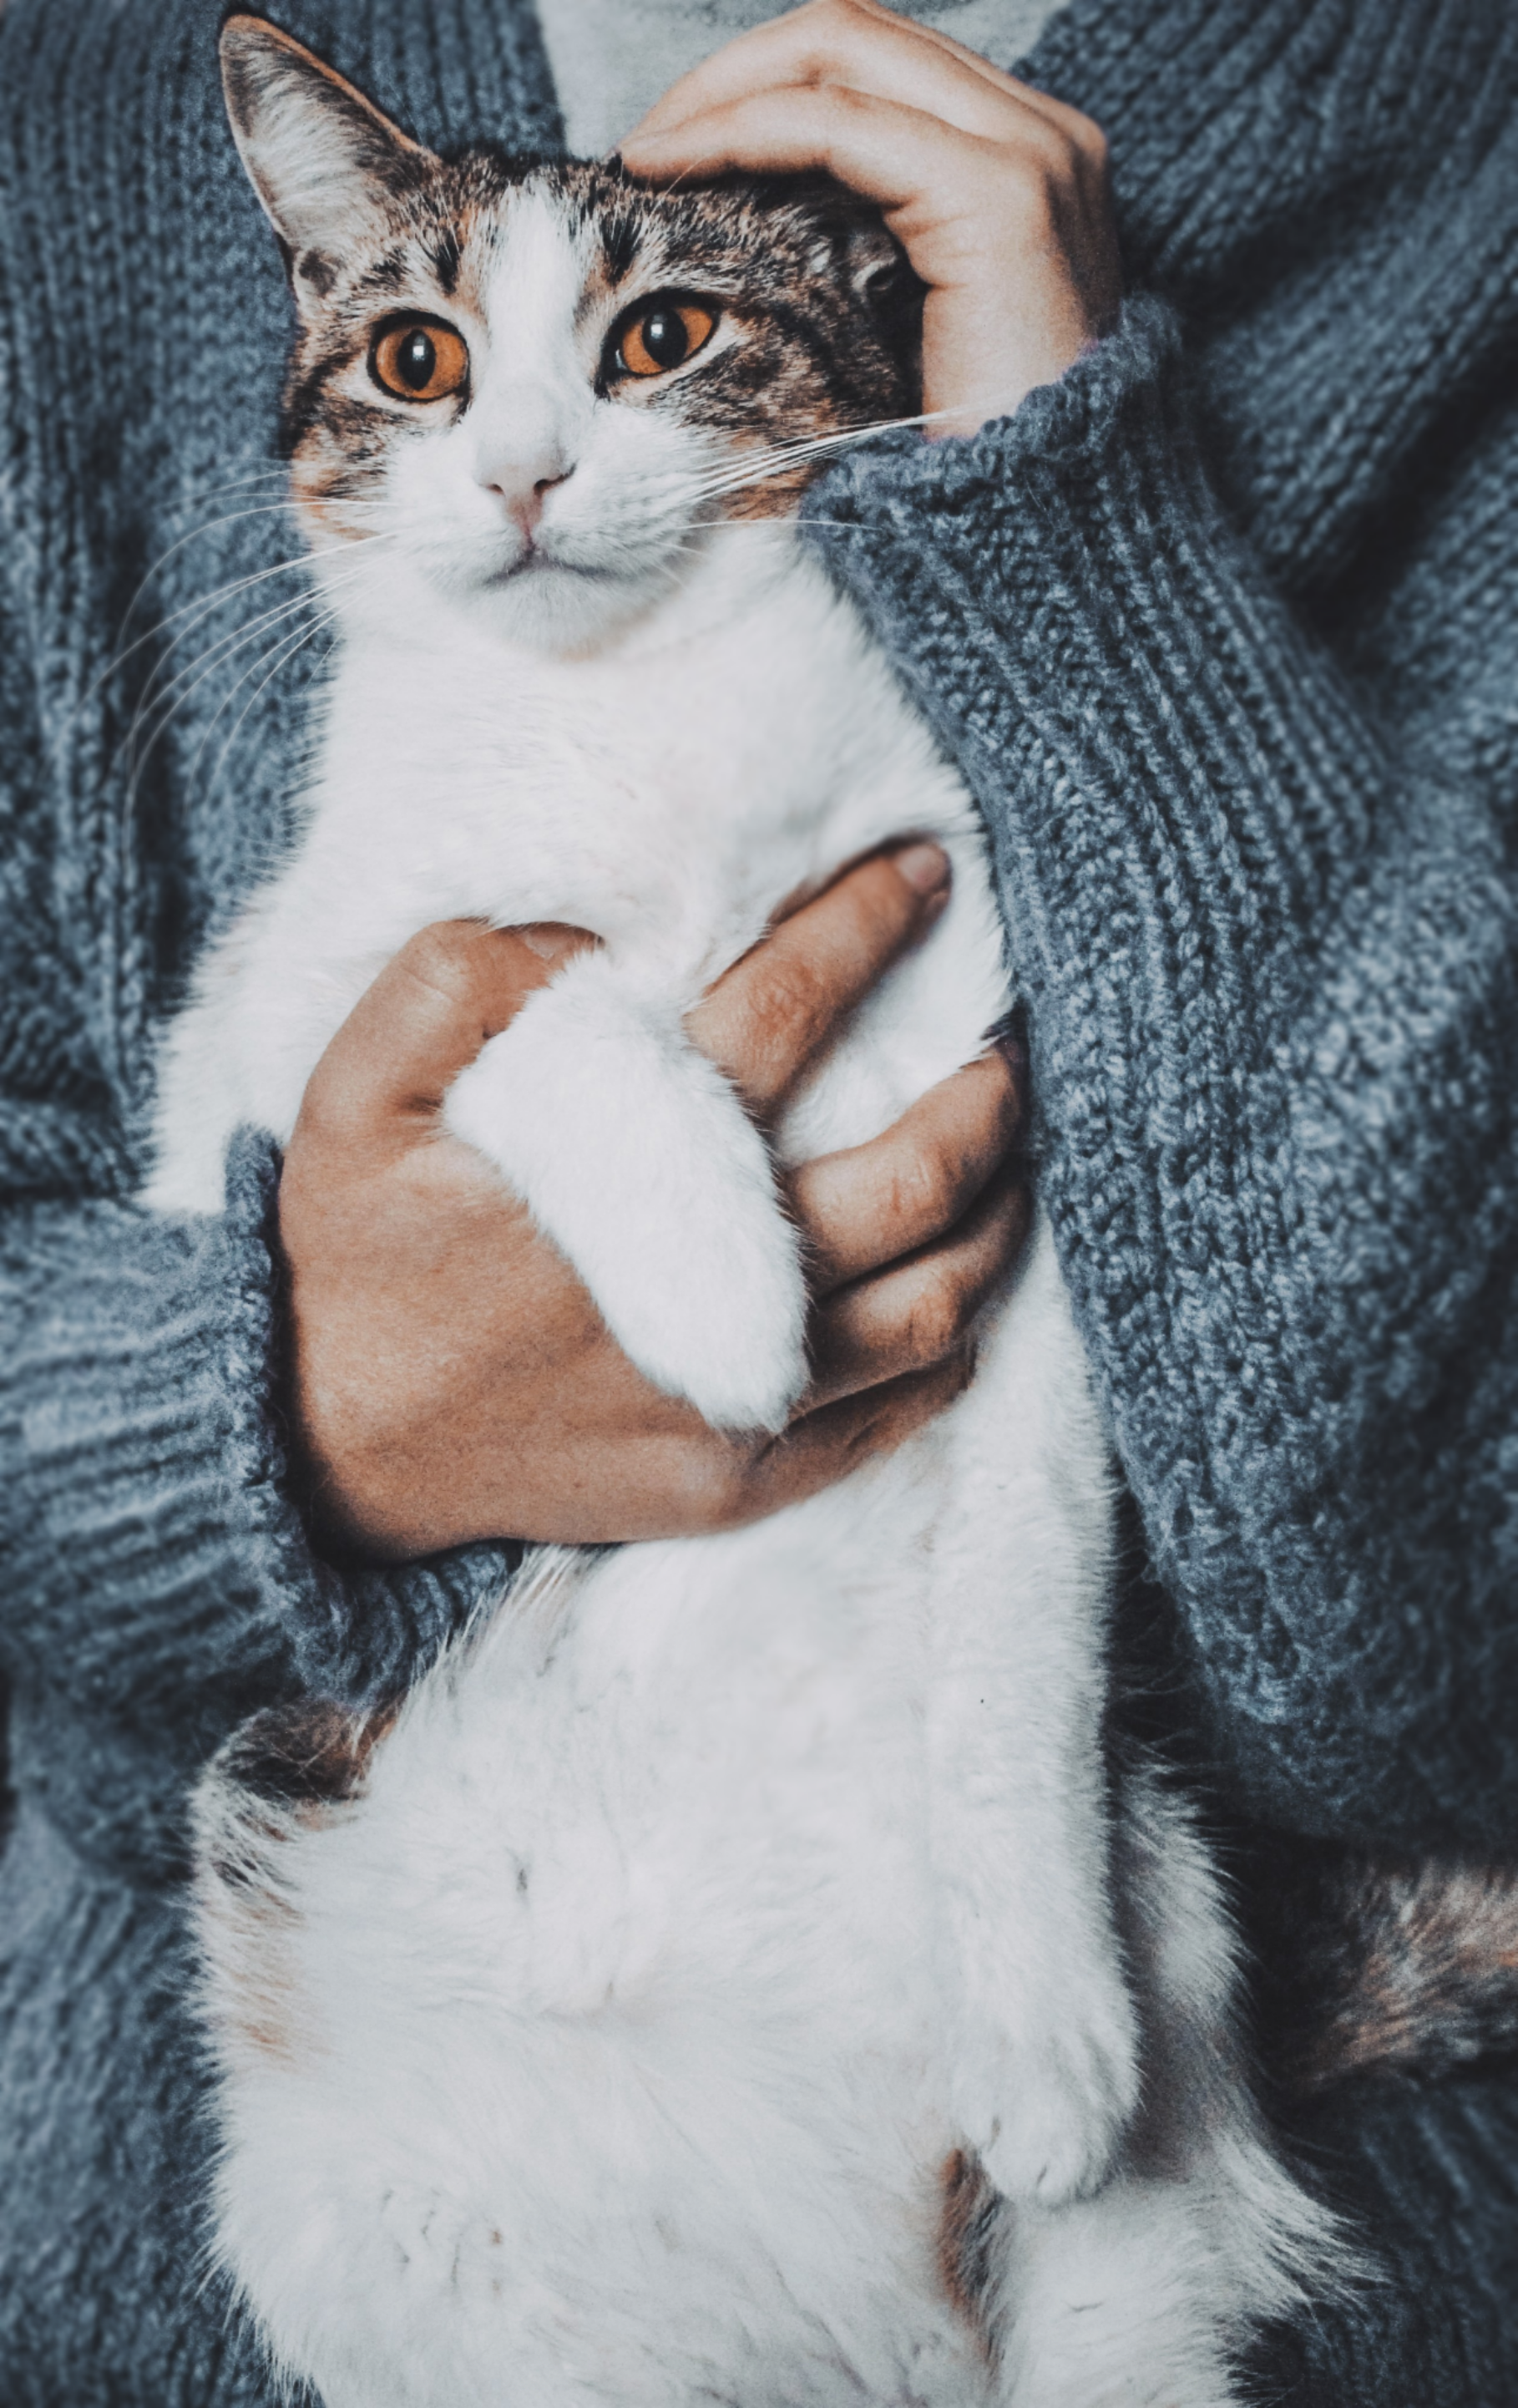 Felinoterapi – behandling för katter